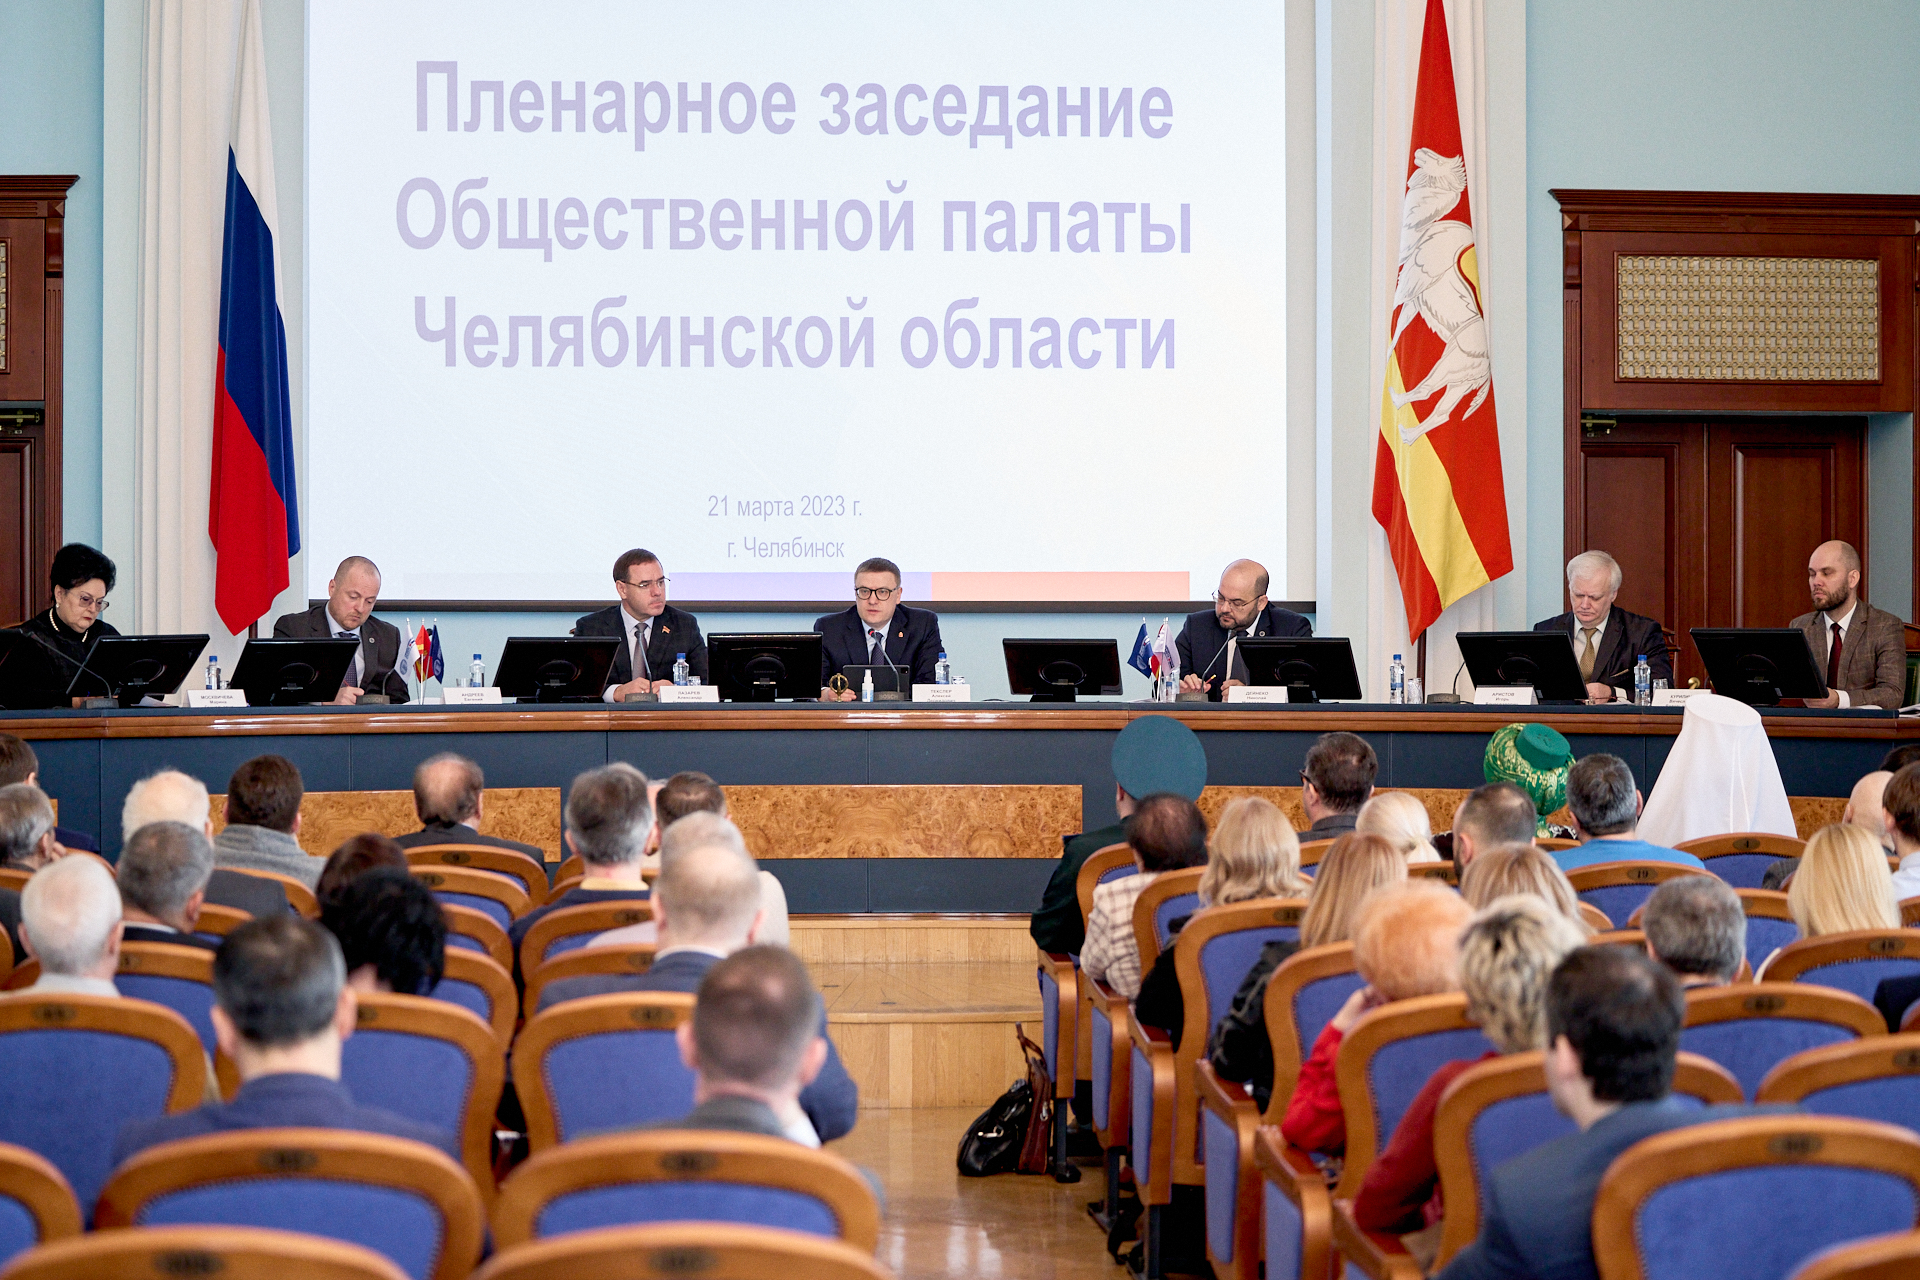 Челябинский Губернатор выступил на пленарном заседании региональной Общественной палаты